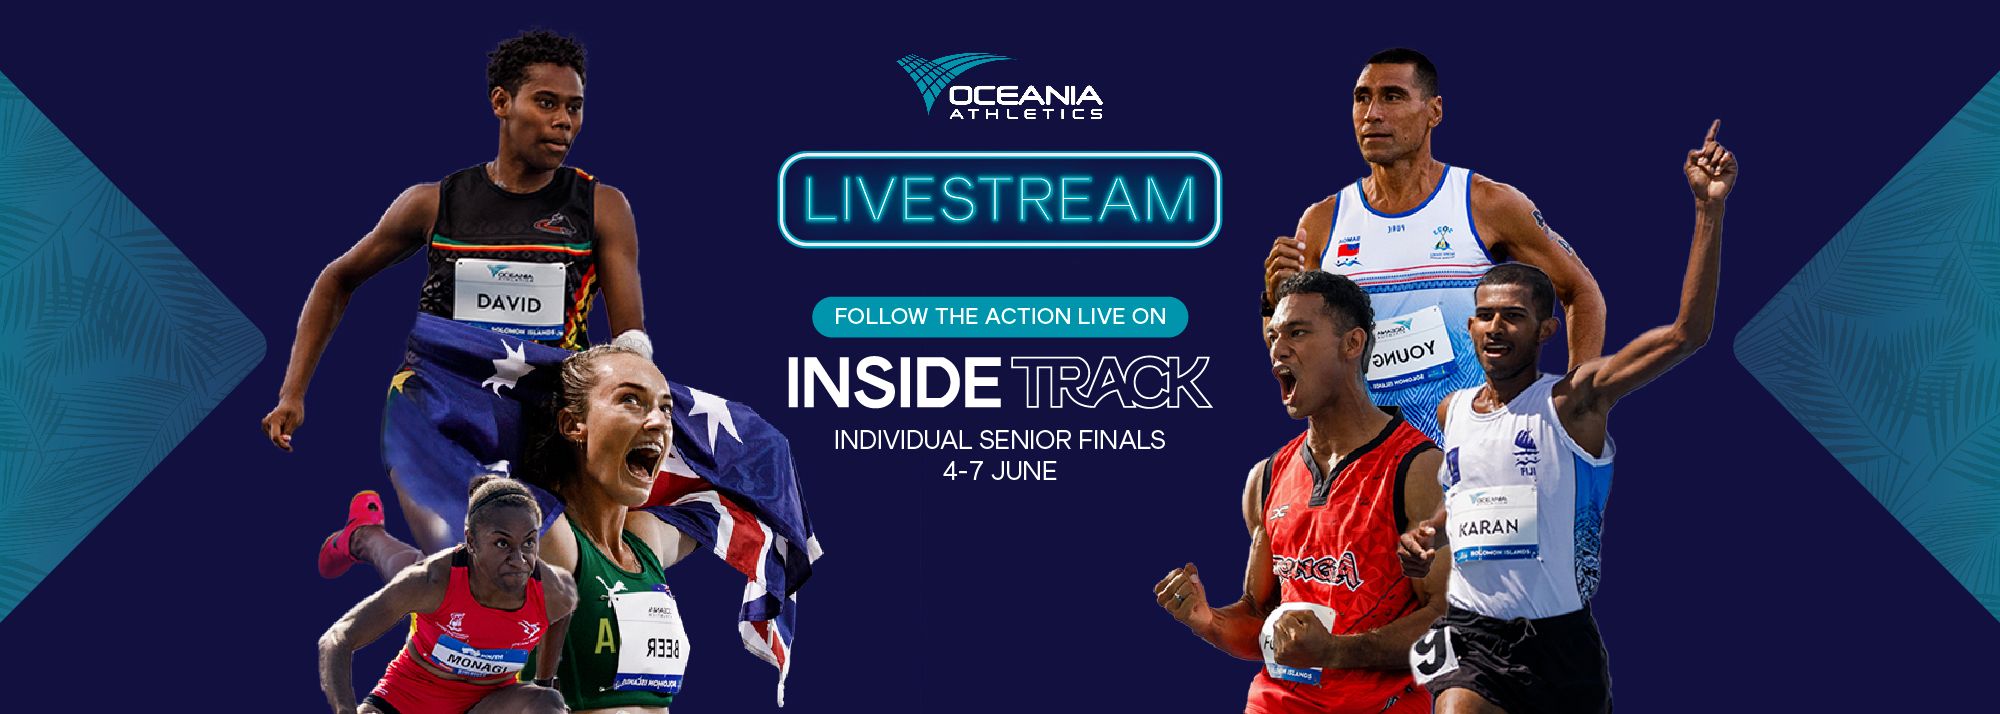 Oceania Championships live stream carousel banner